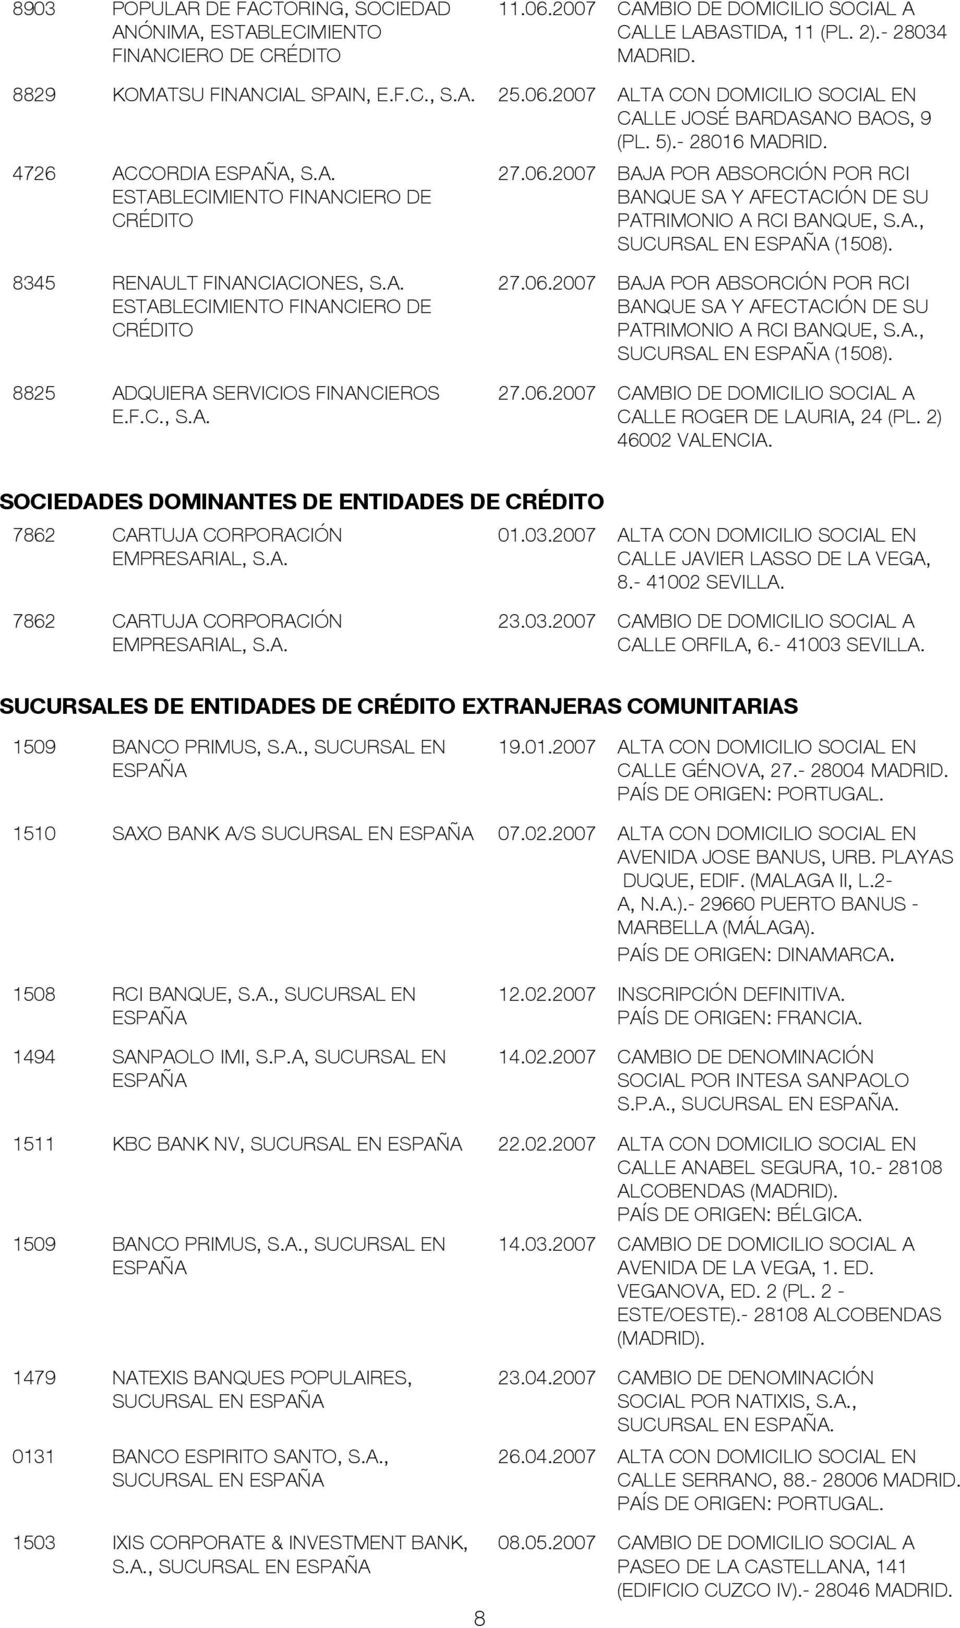 A., SUCURSAL EN (150). 345 RENAULT FINANCIACIONES, S.A. 27.06.2007 BAJA POR ABSORCIÓN POR RCI ESTABLECIMIENTO FINANCIERO DE BANQUE SA Y AFECTACIÓN DE SU CRÉDITO PATRIMONIO A RCI BANQUE, S.A., SUCURSAL EN (150). 25 ADQUIERA SERVICIOS FINANCIEROS 27.